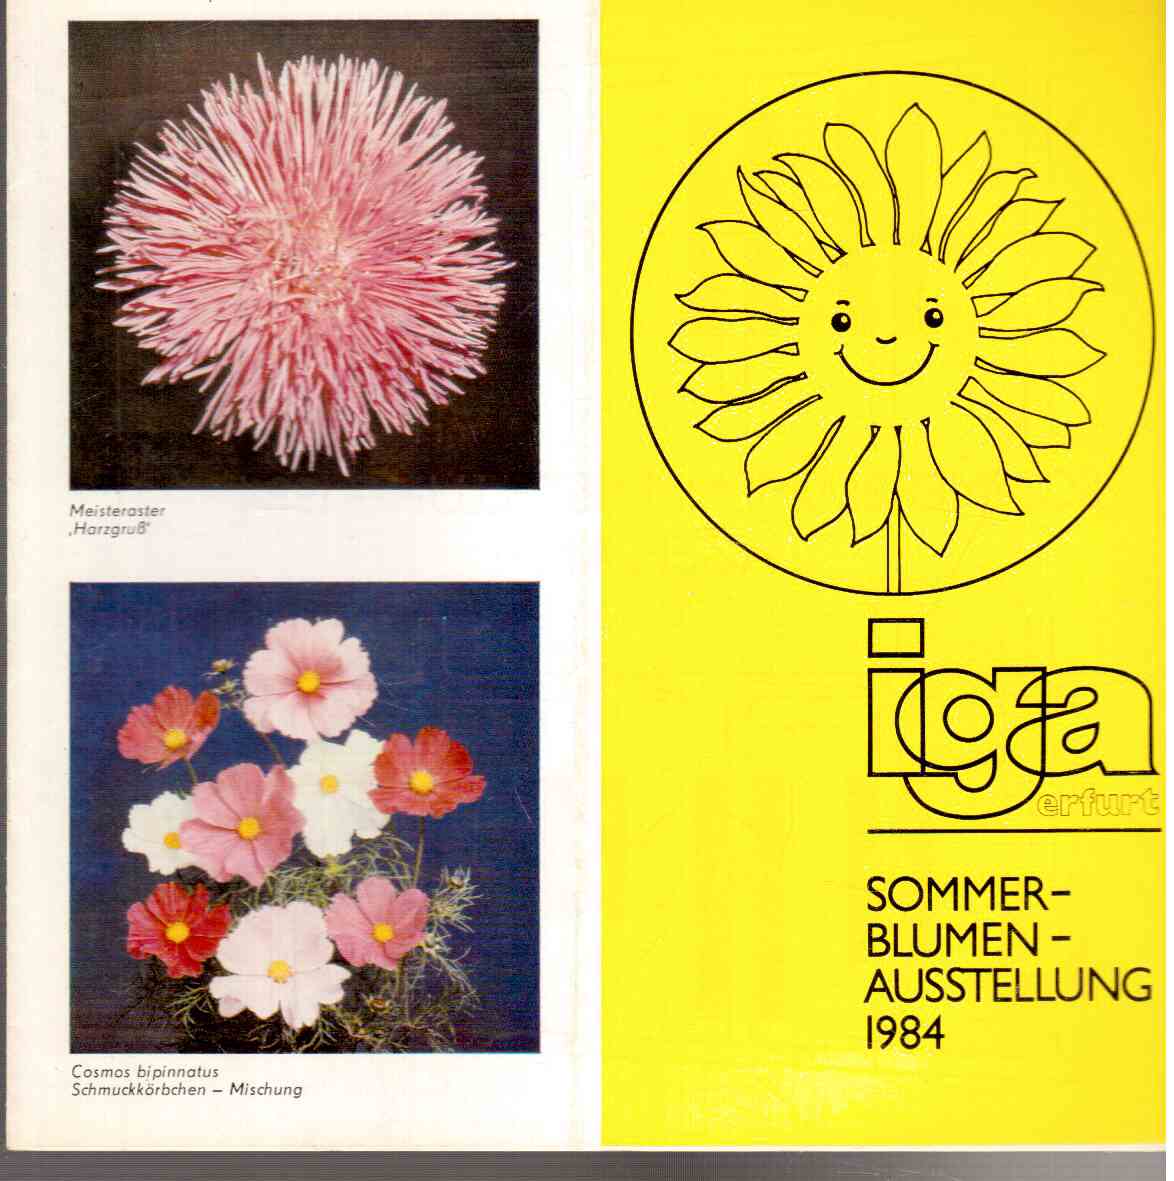 Sommer-Blumen-Ausstellung 1984